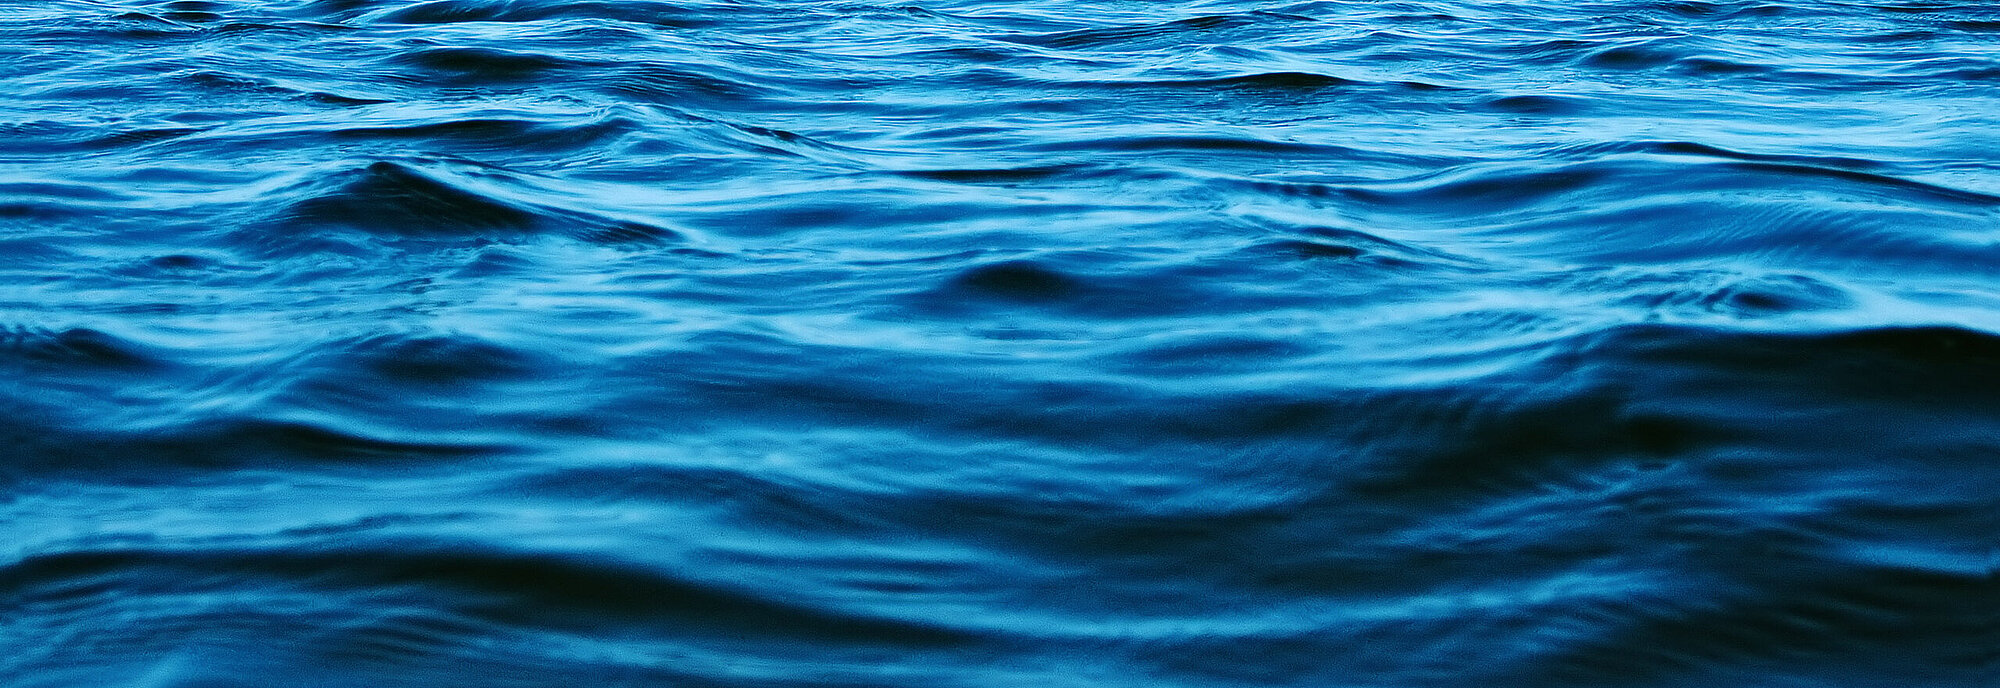 Meerwasser blau Horizont Himmel